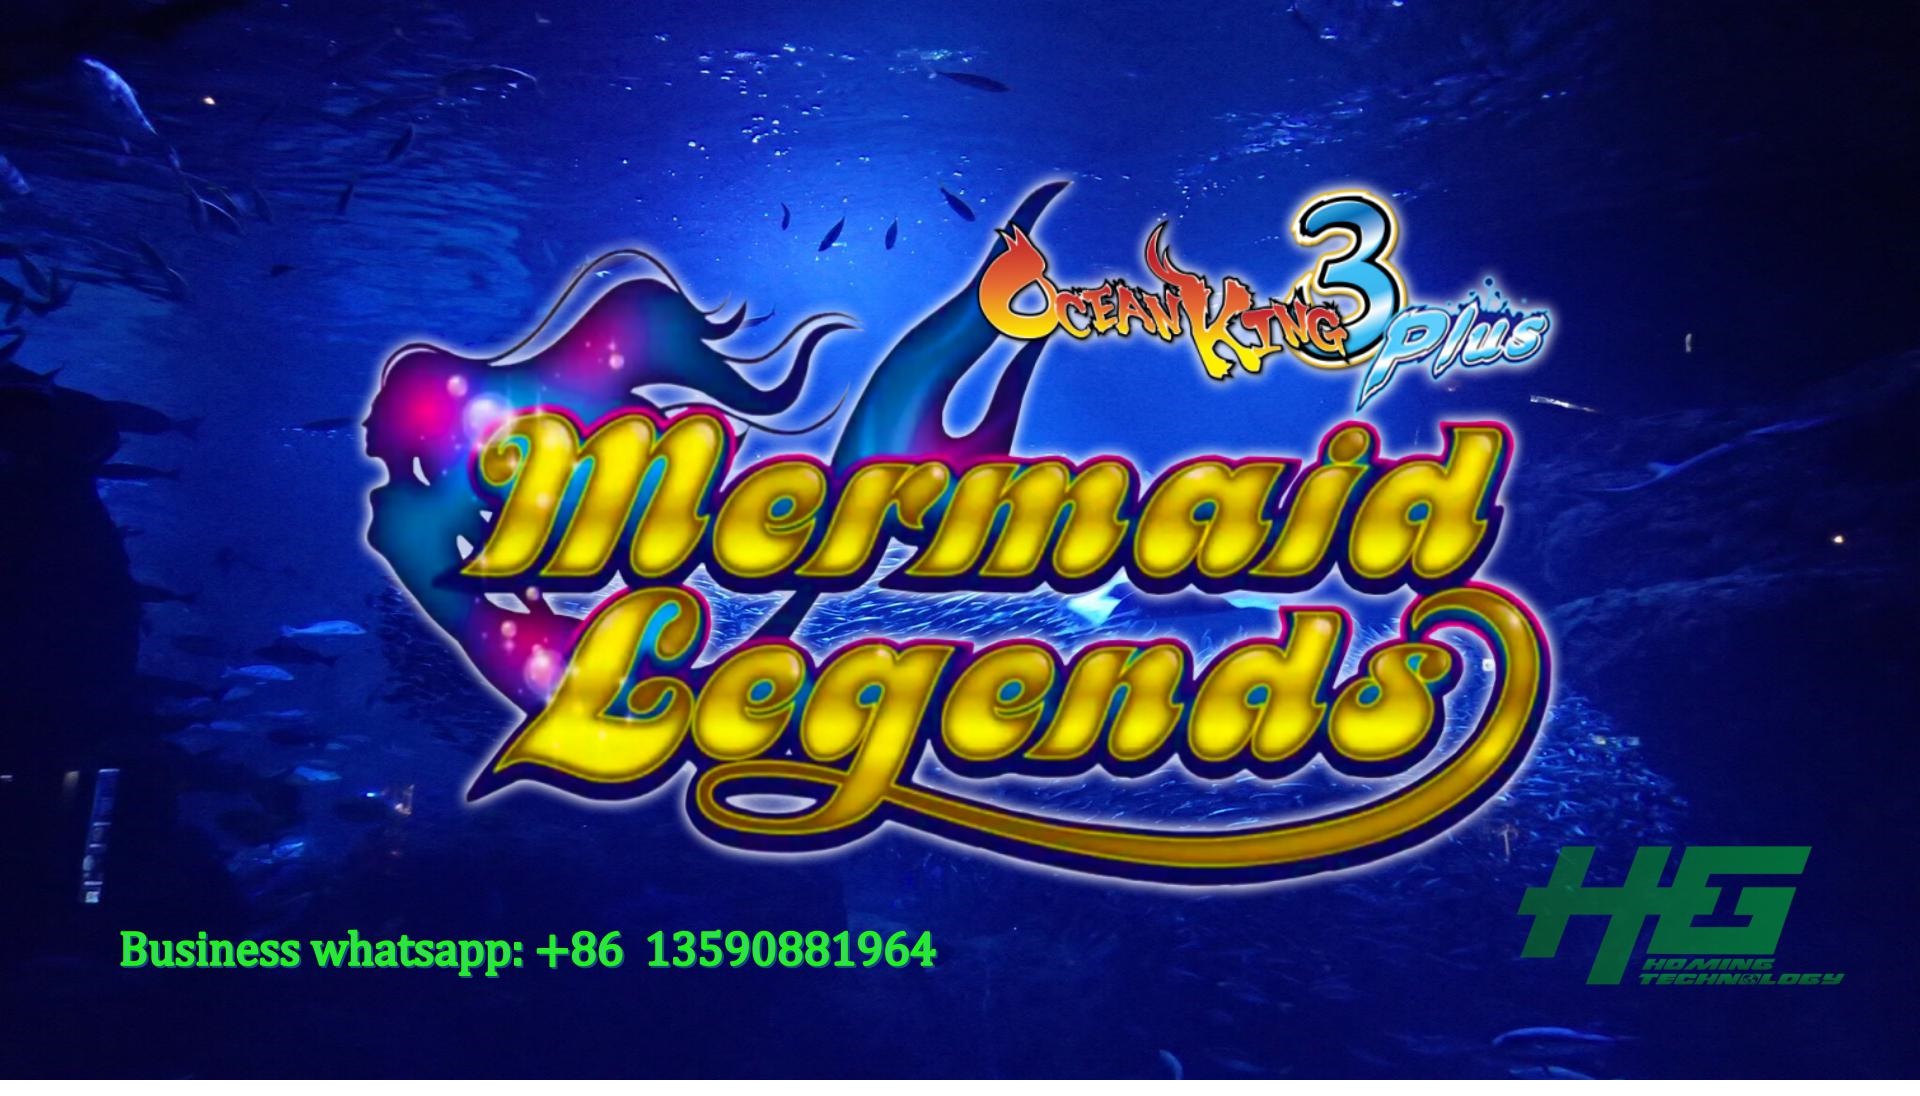 Ocean King 3 Plus Mermaid Legends,Ocean King 3 Plus Mermaid Legends fishing game,Mermaid Legends fishing game,Ocean King 3 Plus Turtle